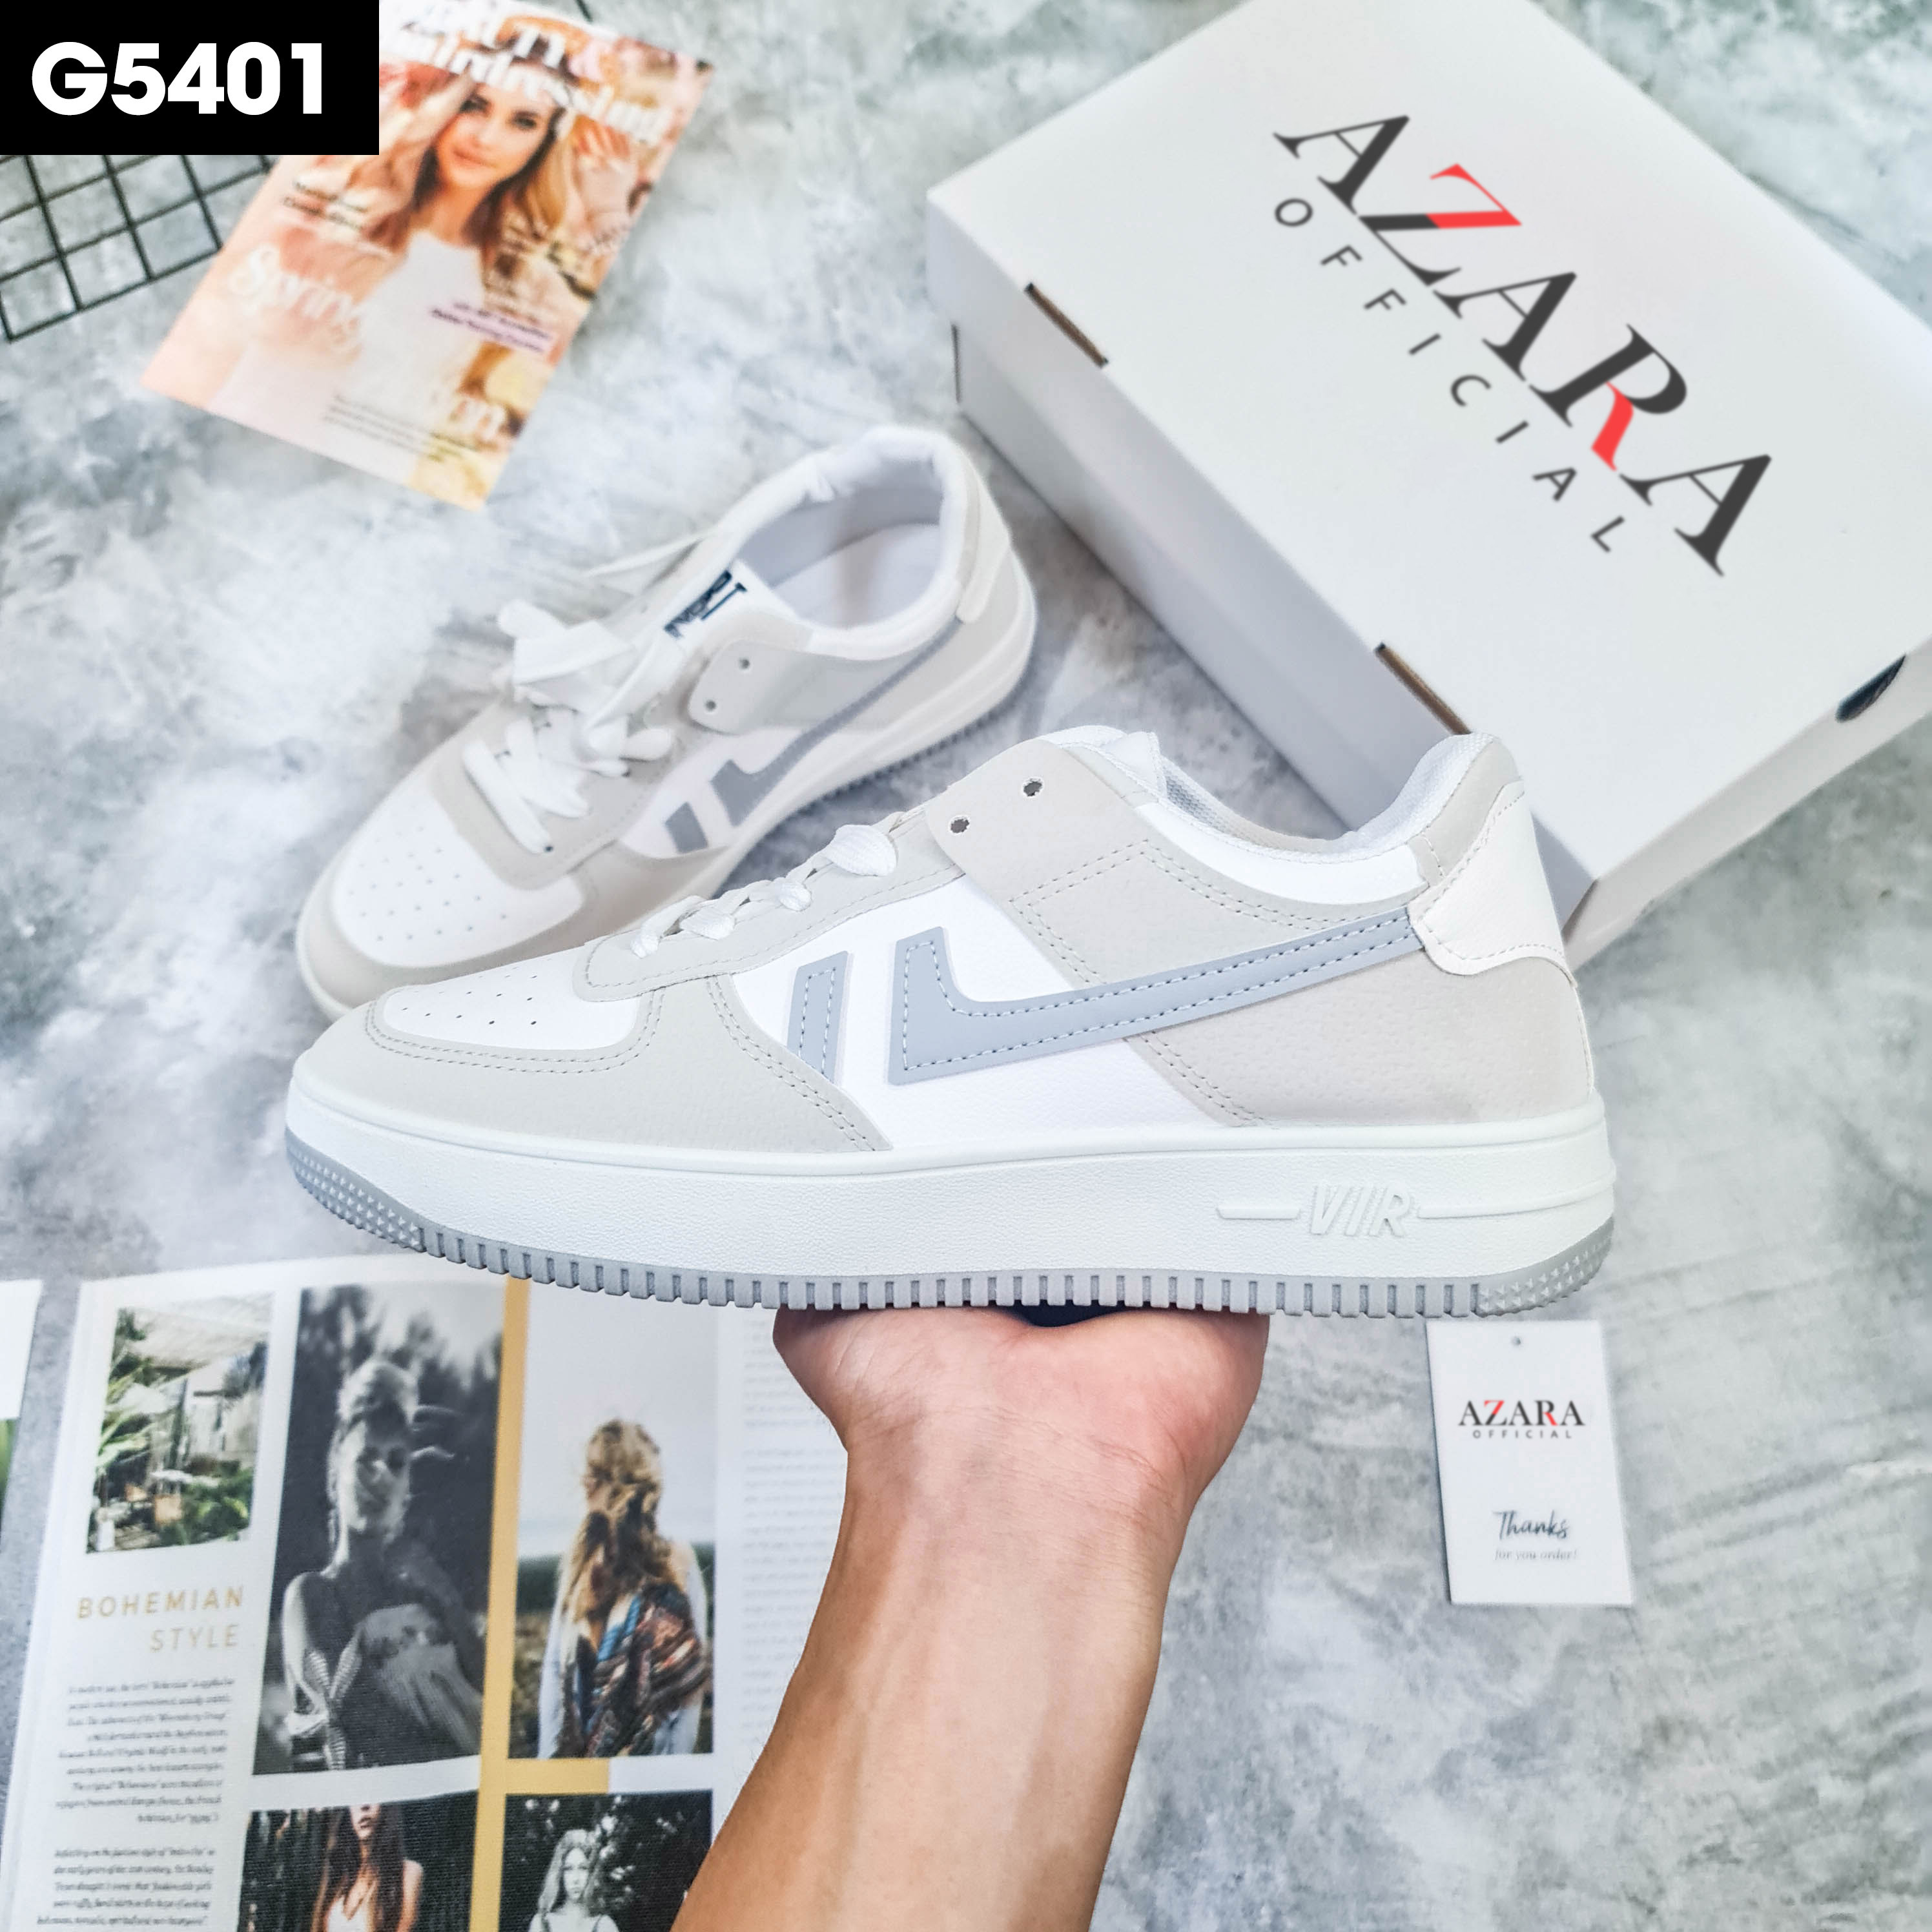 Giày Thể Thao Nam AZARA- Sneaker Màu Xám - Xanh, Giày Thiết Kế Thể Thao, Đế Nhẹ, Vải Thoáng Khí - G5401